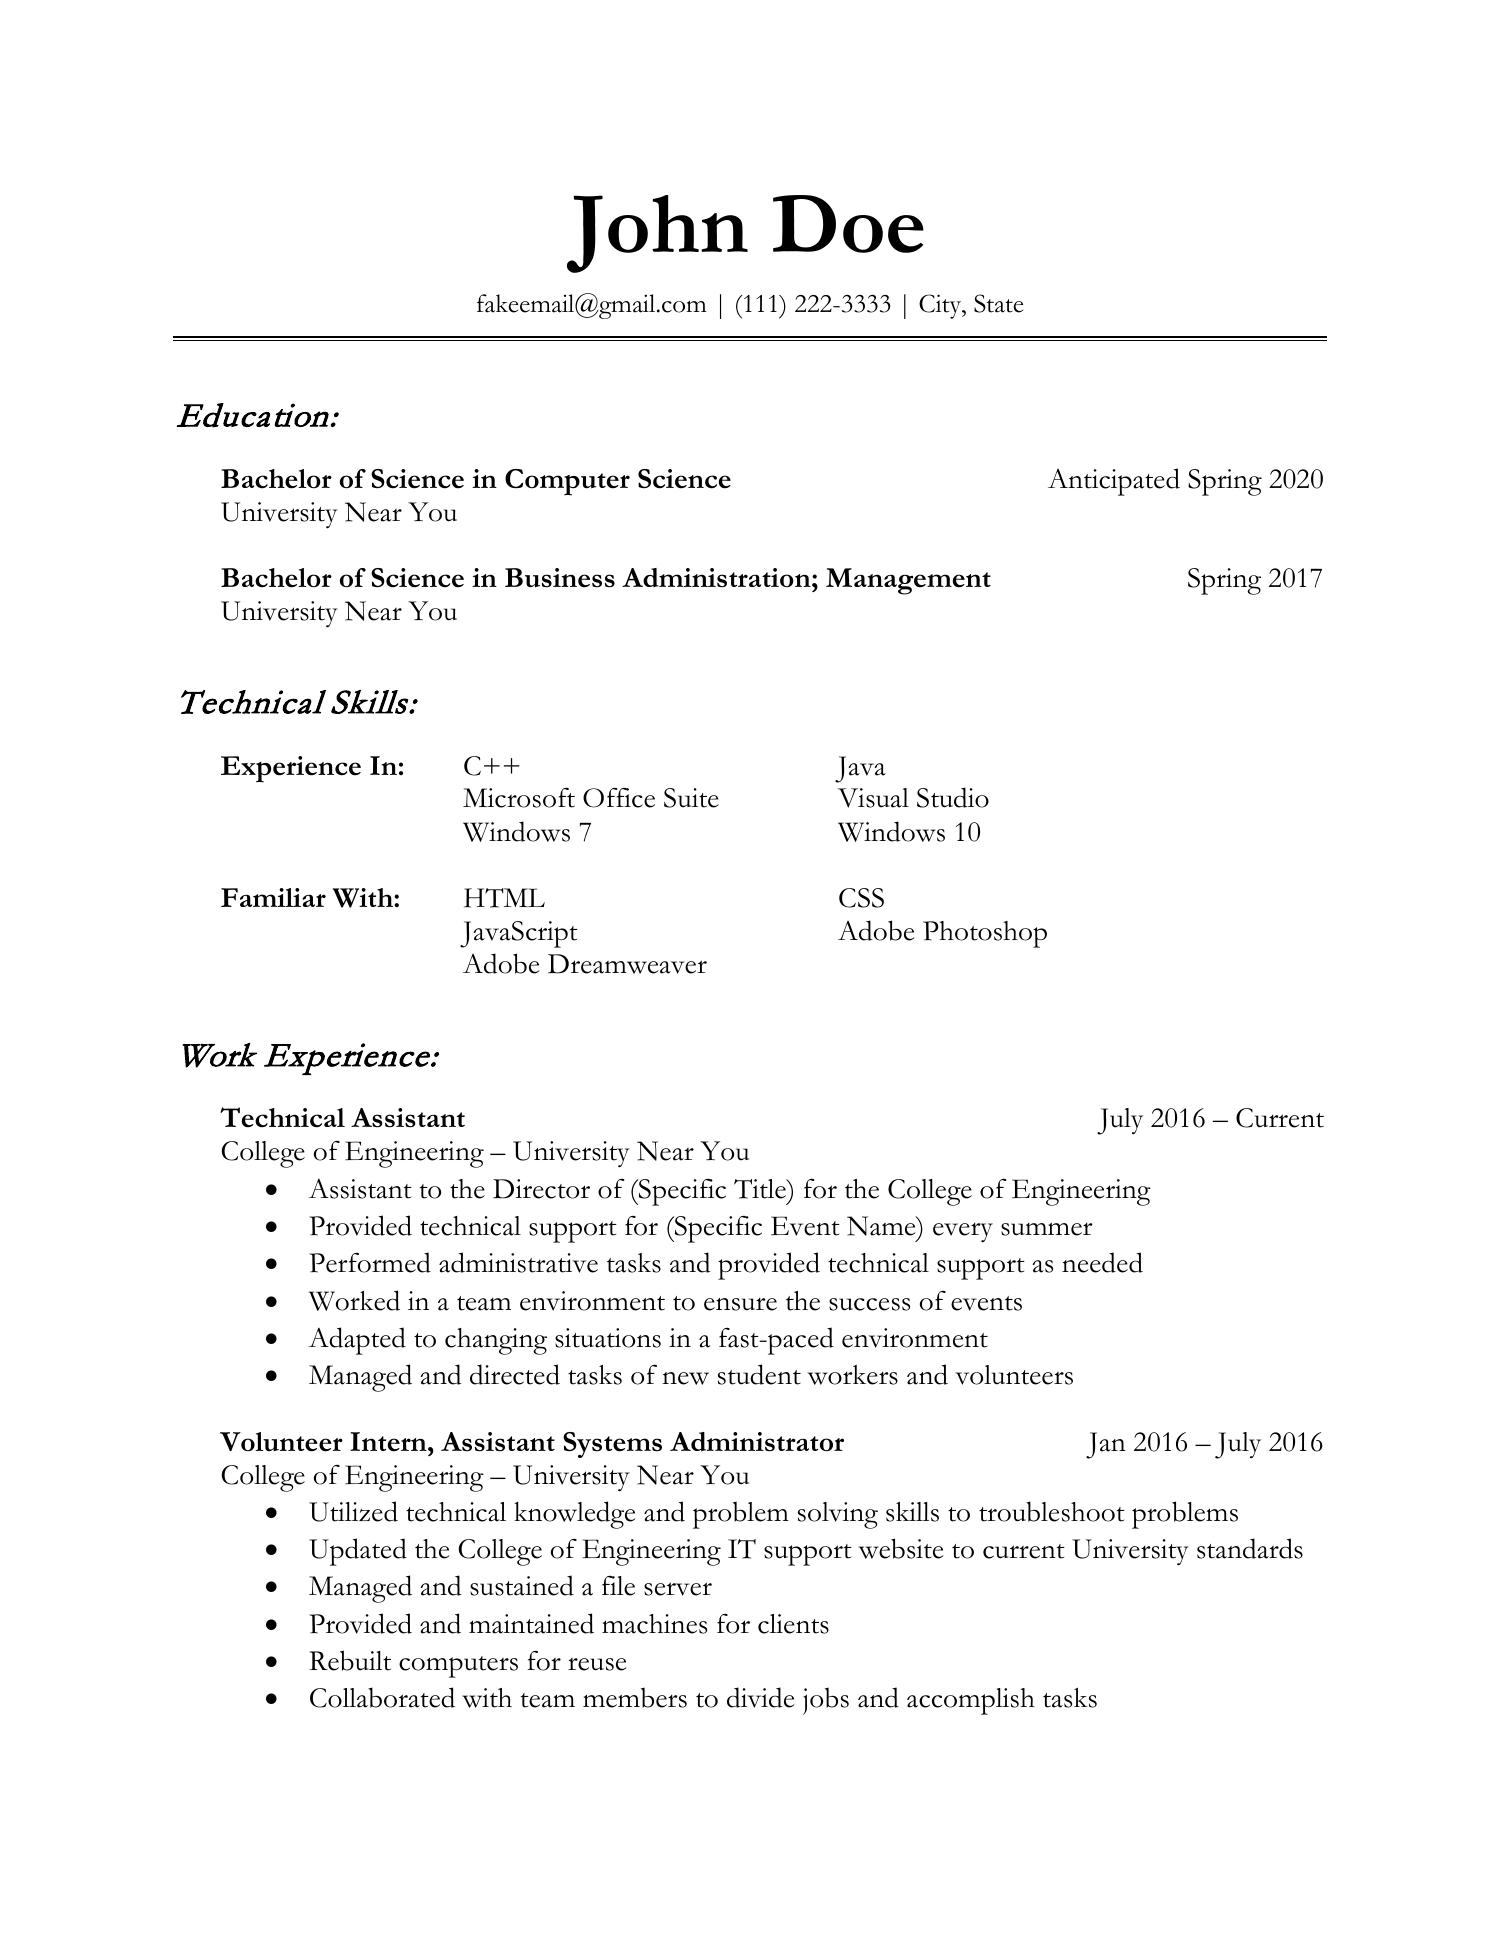 John Doe Resume.pdf